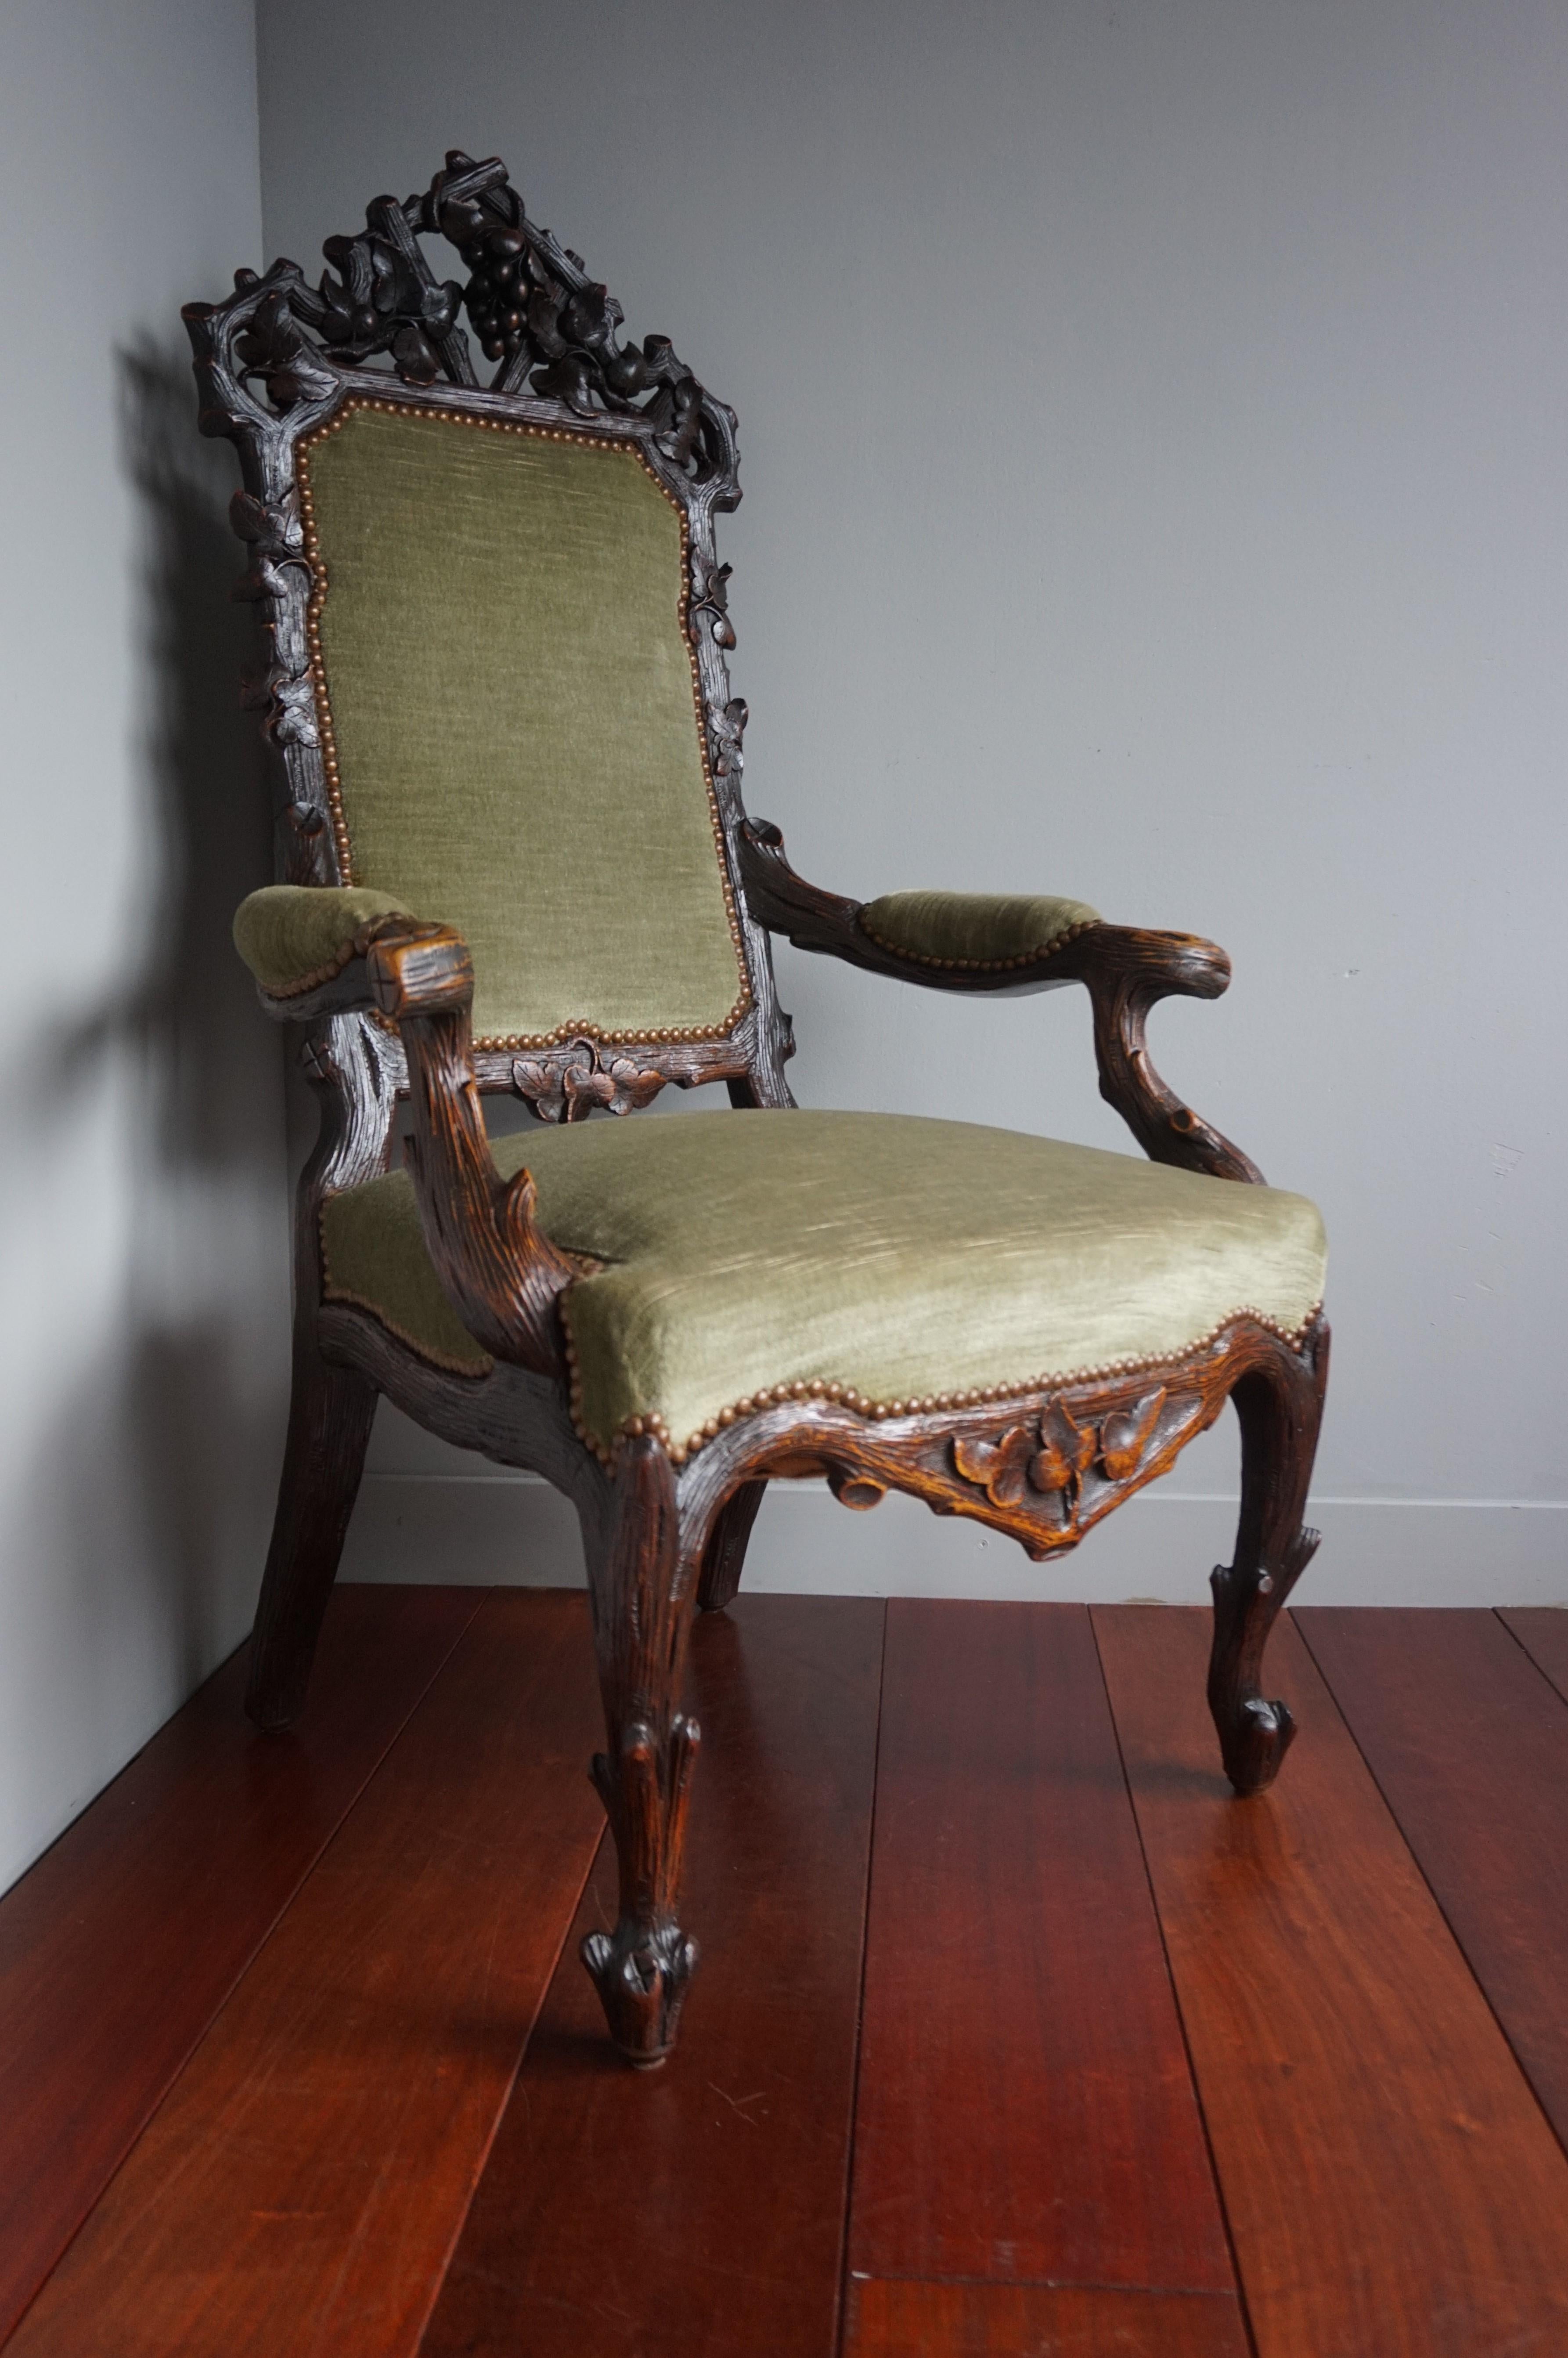 Fauteuil unique et impressionnant avec une tapisserie verte. 

Cette superbe chaise est aussi solide et stable que le jour où elle a été fabriquée et le travail du bois est également en excellent état. Le cadre en chêne massif et exceptionnellement